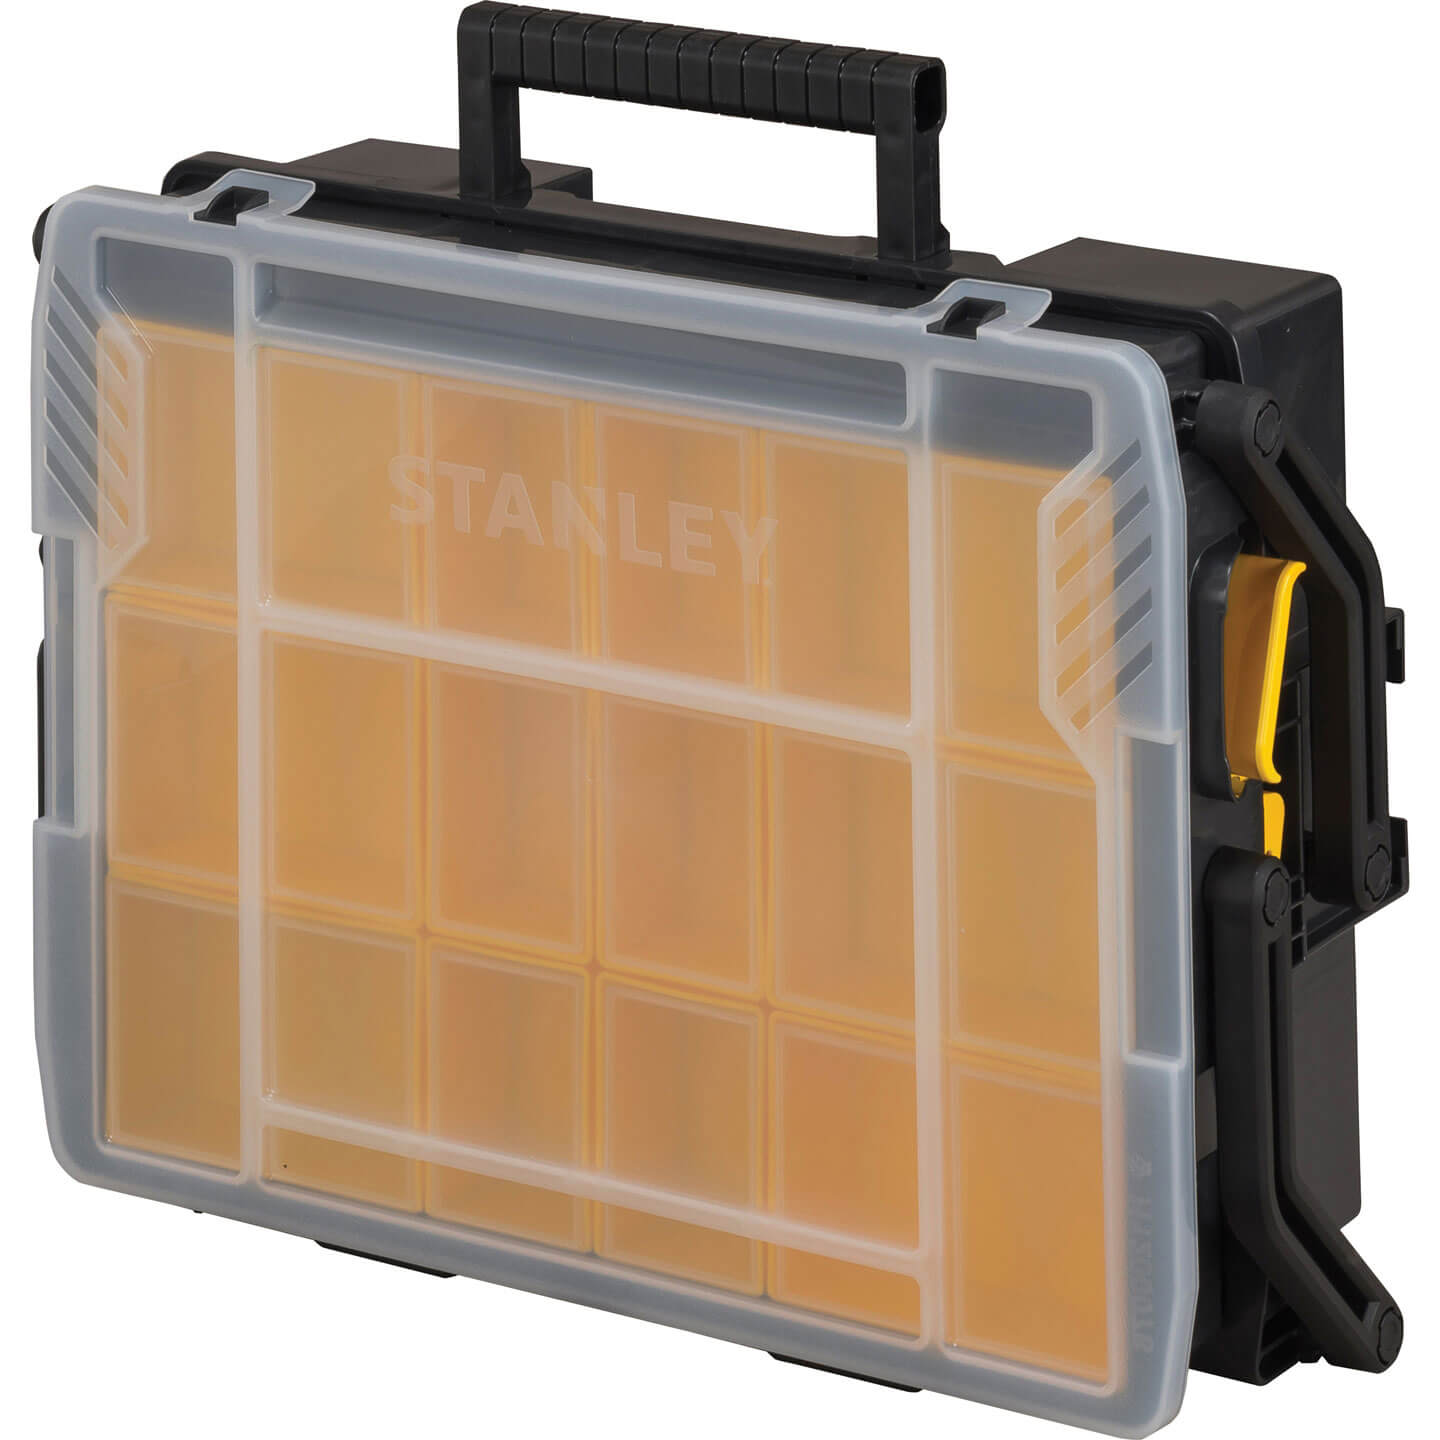 Image of Stanley Sortmaster Multi-Level Organiser Box